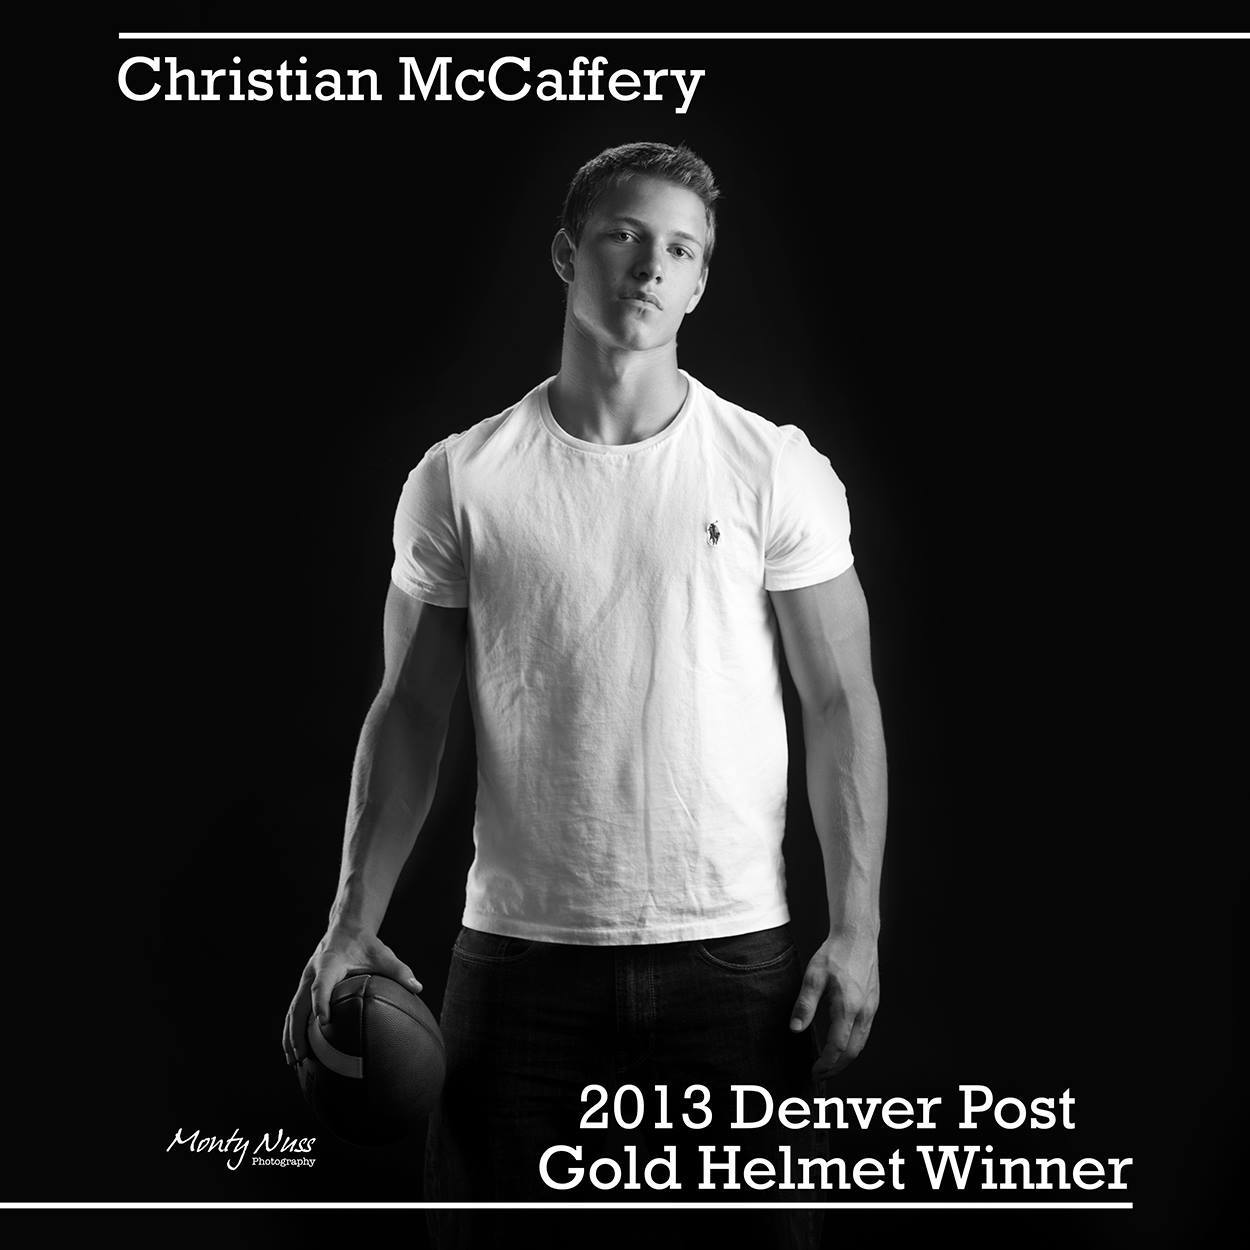 Christian McCaffrey, Stanford